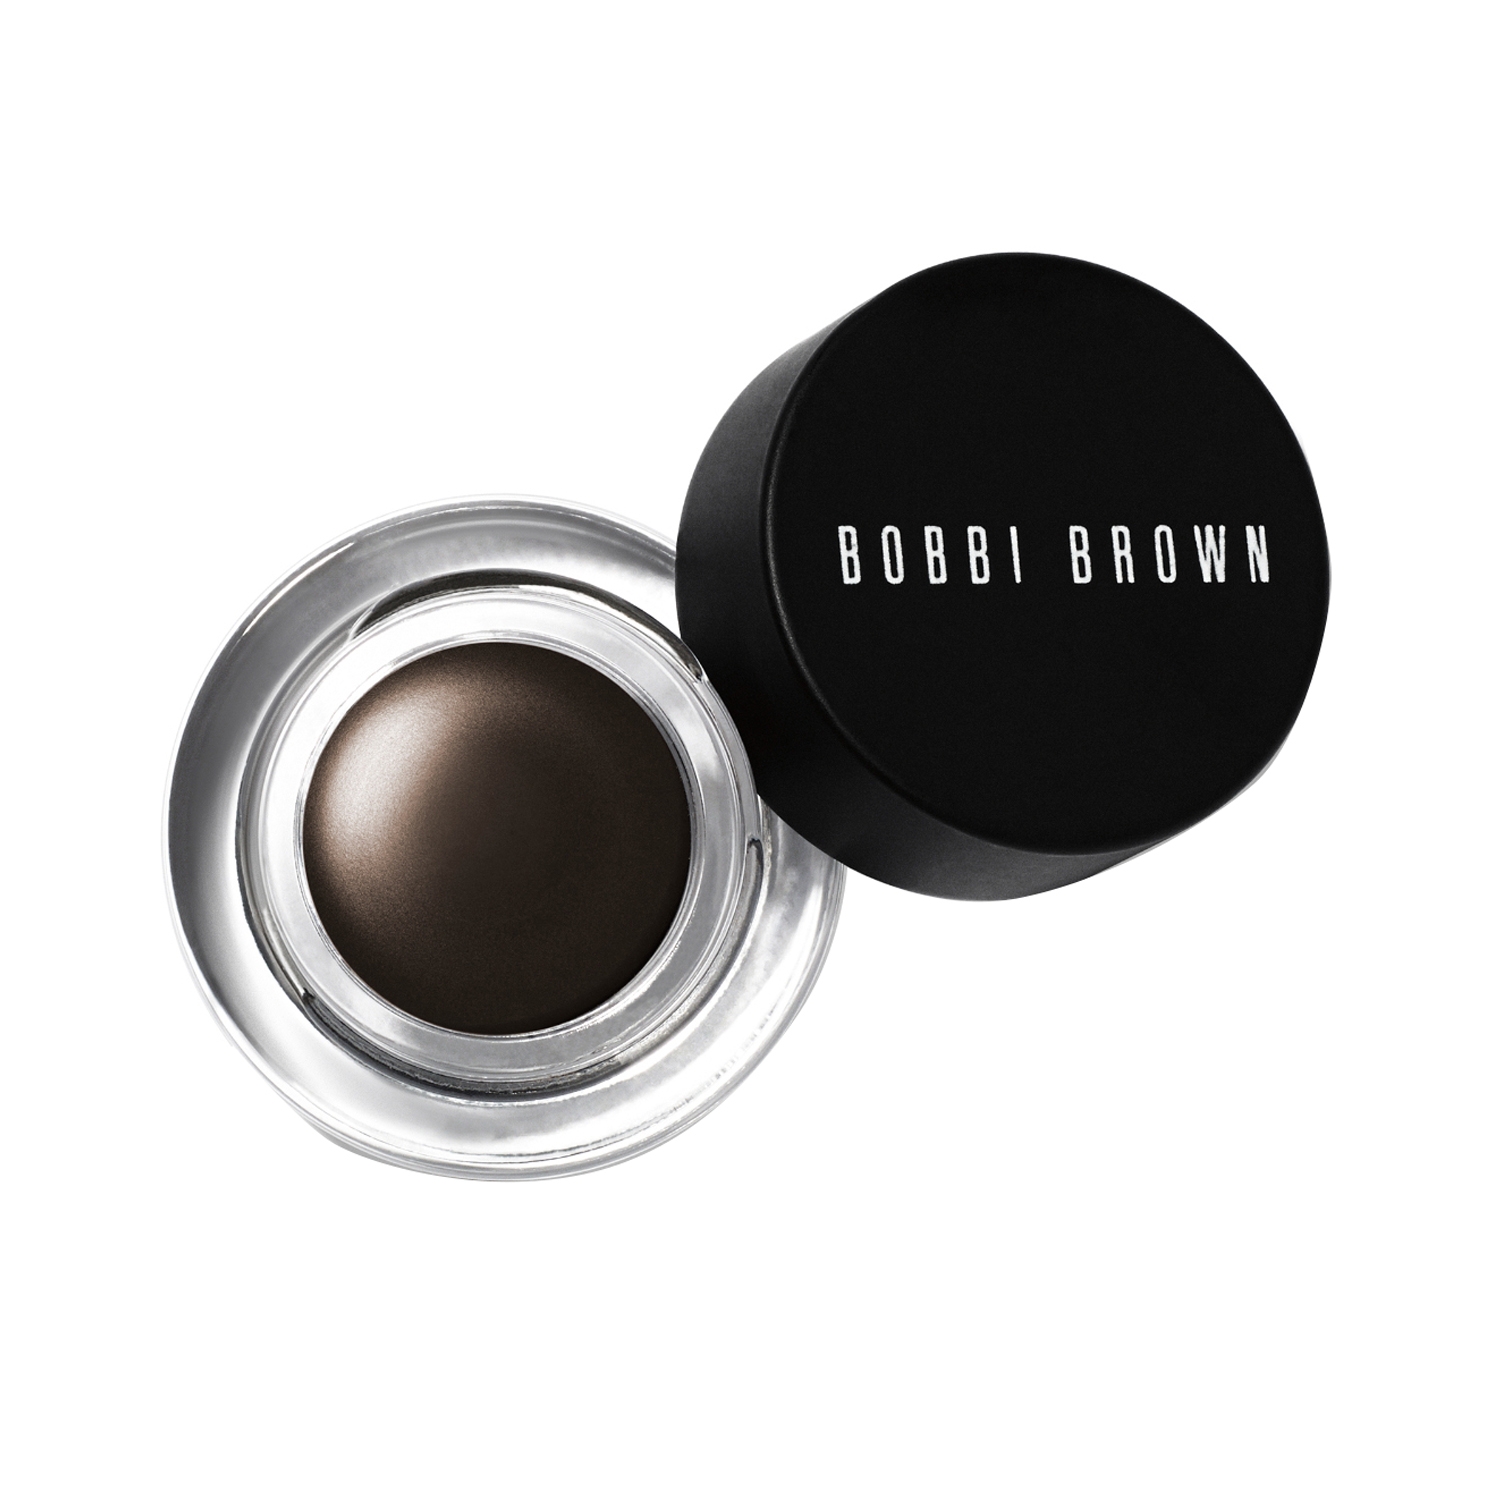 Bobbi Brown | Bobbi Brown Long-Wear Gel Eyeliner - Espresso Ink (3g)